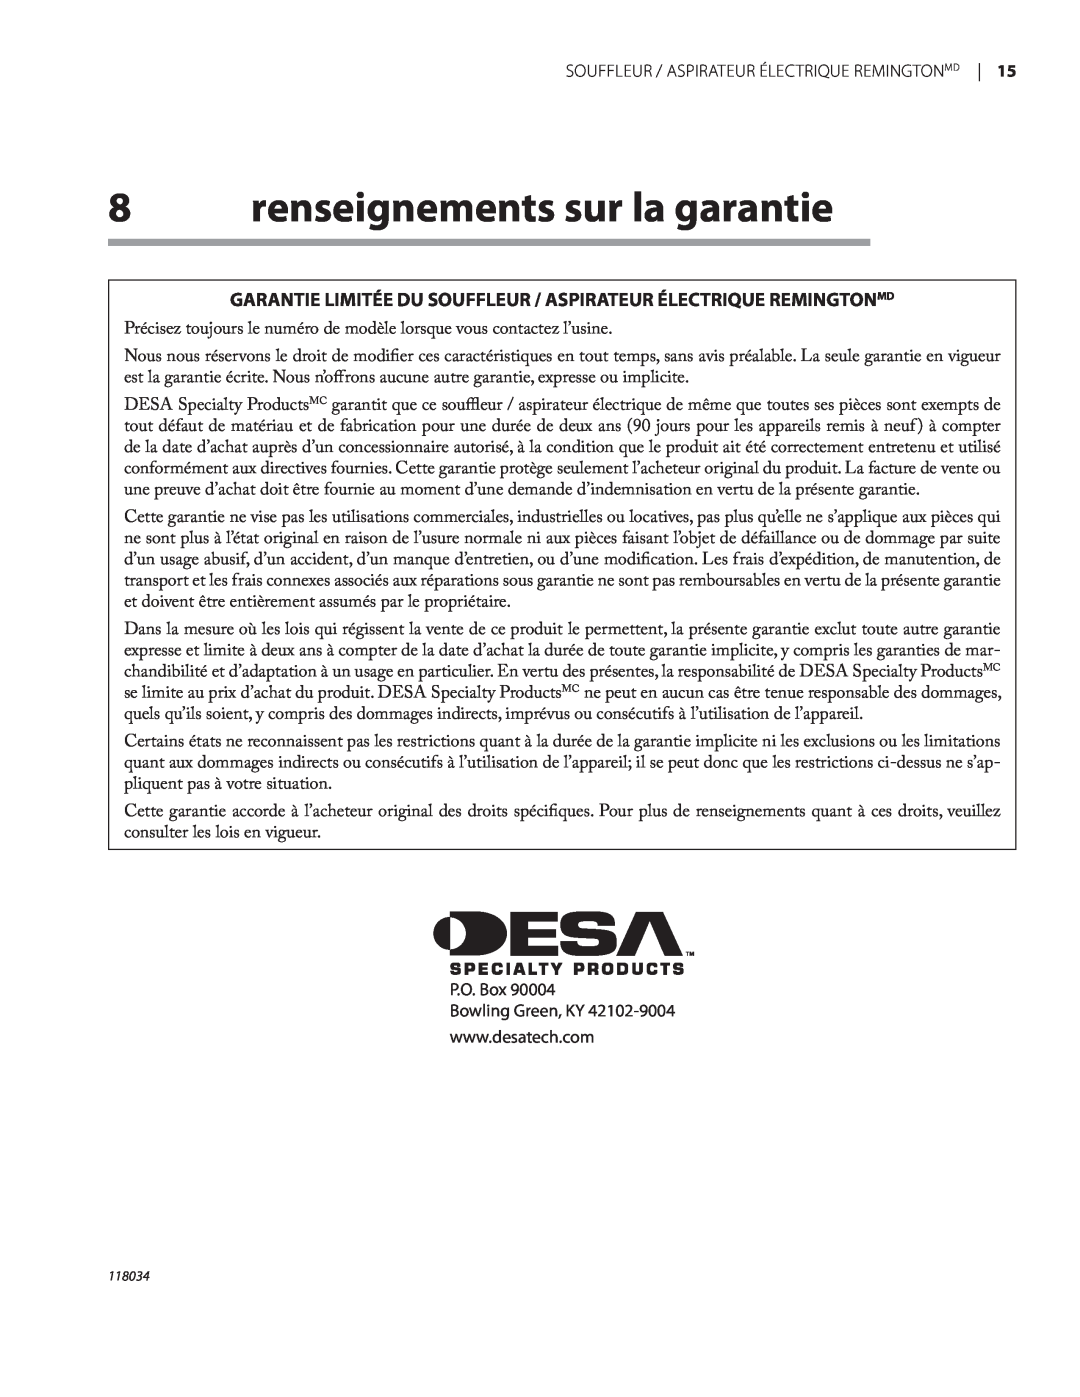 Remington BV12199A renseignements sur la garantie, Garantie Limitée Du Souffleur / Aspirateur Électrique Remingtonmd 